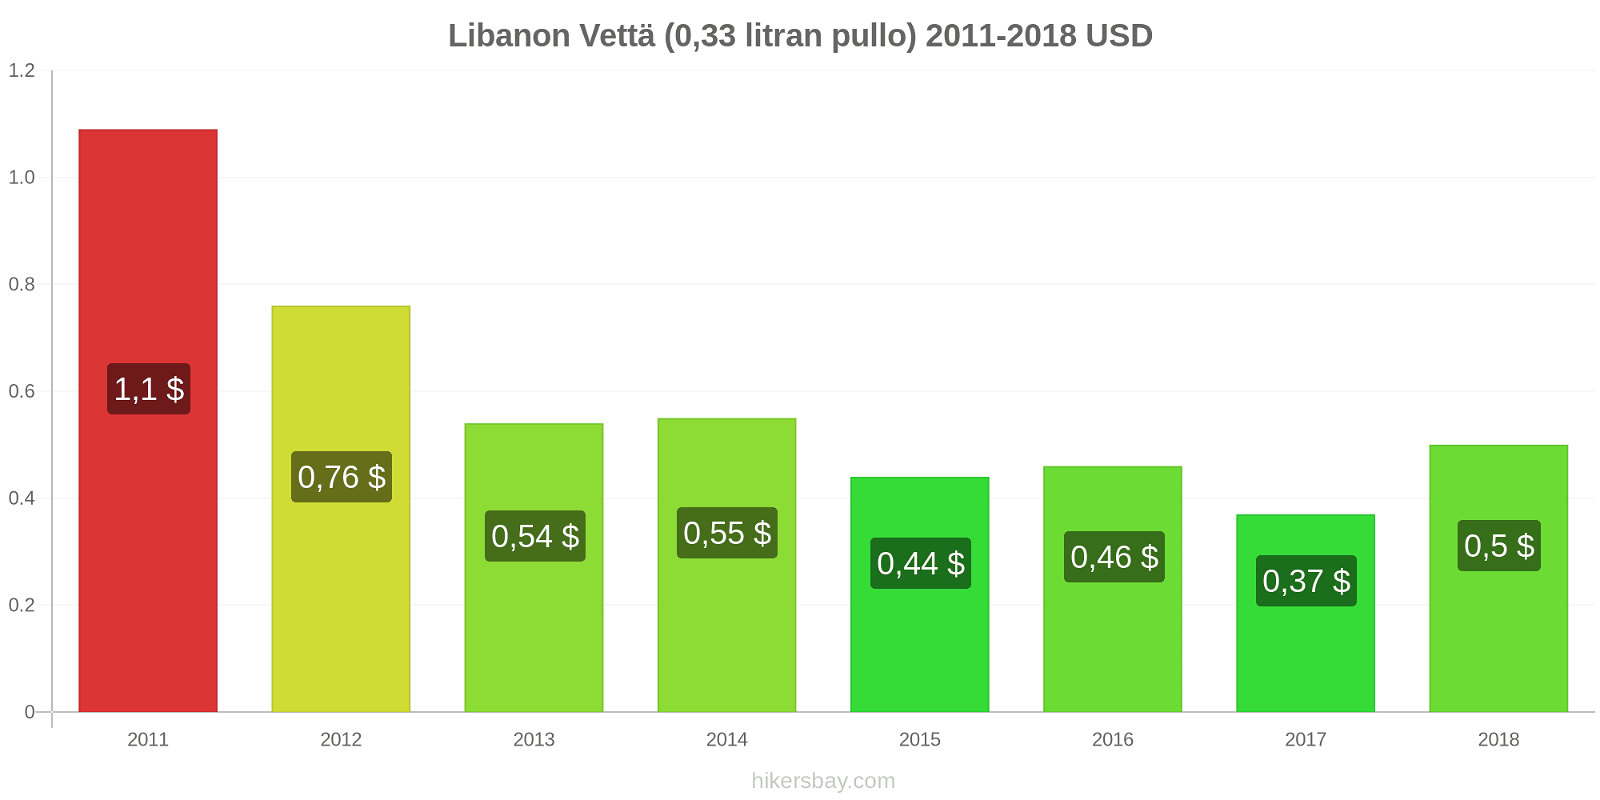 Libanon hintojen muutokset Vettä (0.33 litran pullo) hikersbay.com